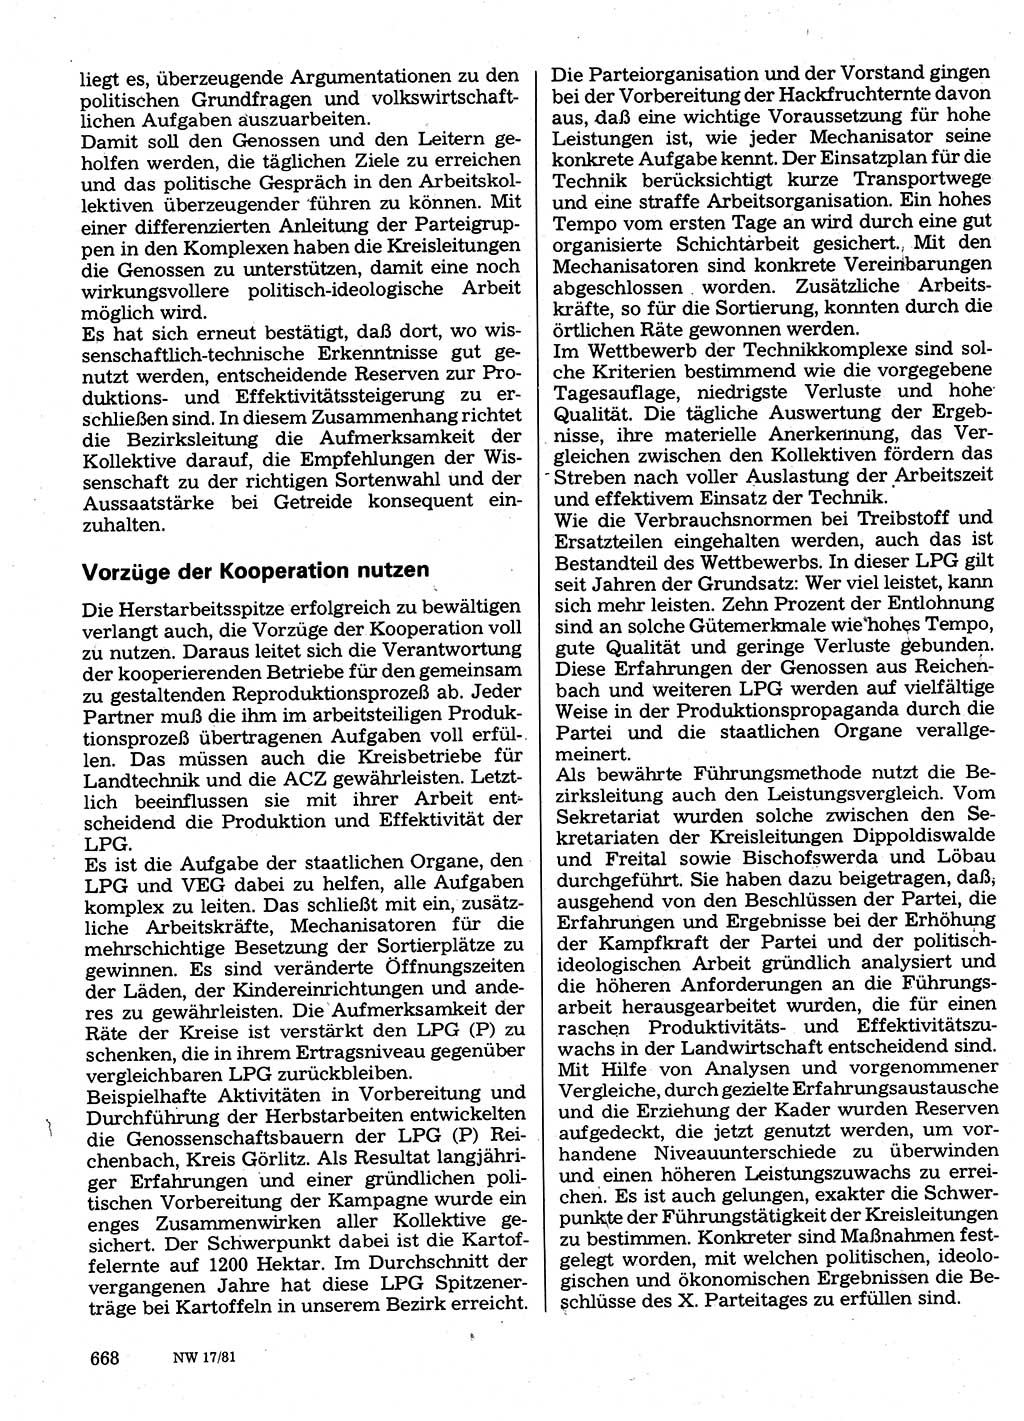 Neuer Weg (NW), Organ des Zentralkomitees (ZK) der SED (Sozialistische Einheitspartei Deutschlands) für Fragen des Parteilebens, 36. Jahrgang [Deutsche Demokratische Republik (DDR)] 1981, Seite 668 (NW ZK SED DDR 1981, S. 668)